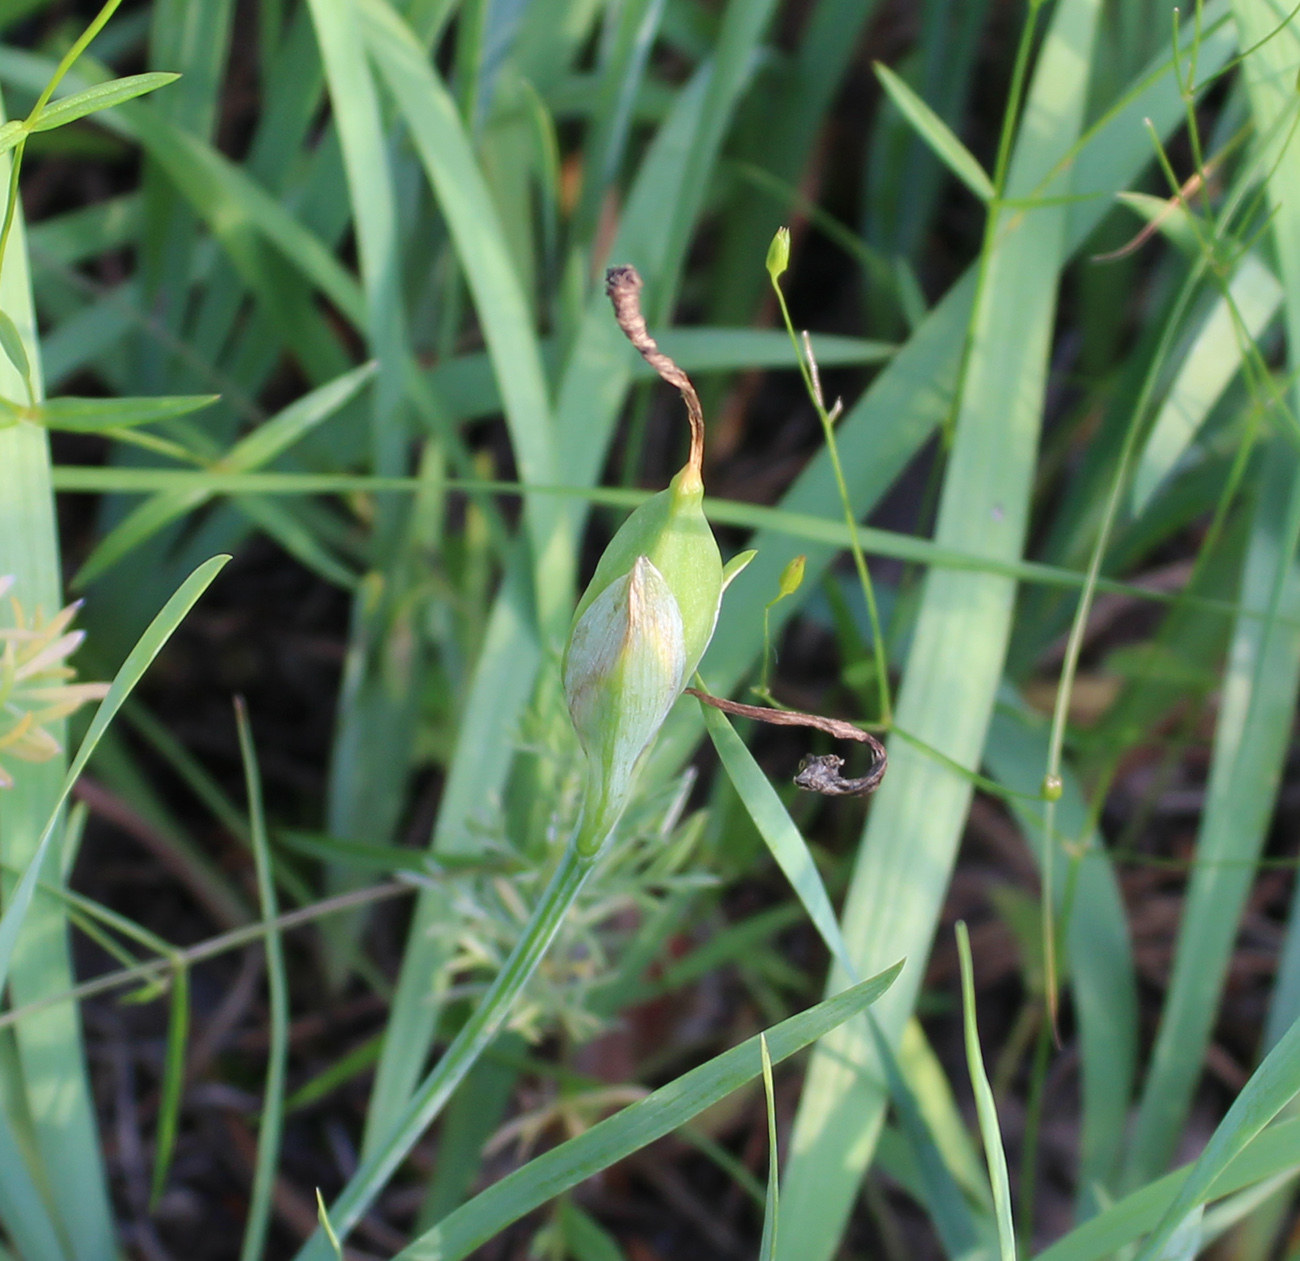 Image of Iris pineticola specimen.